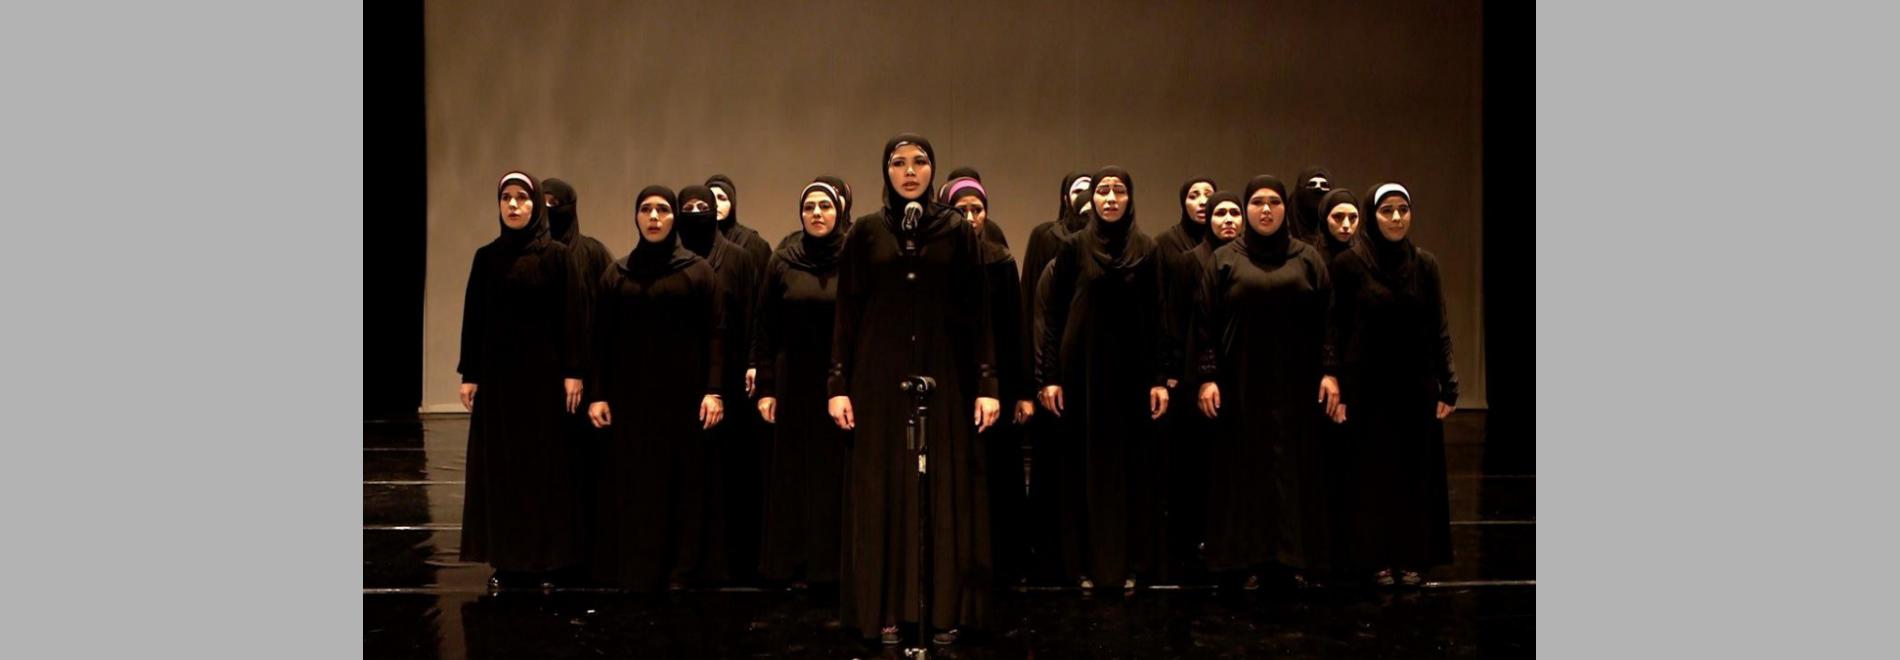 Queens of Syria / Reines de Síria (Yasmin Fedda, 2014)